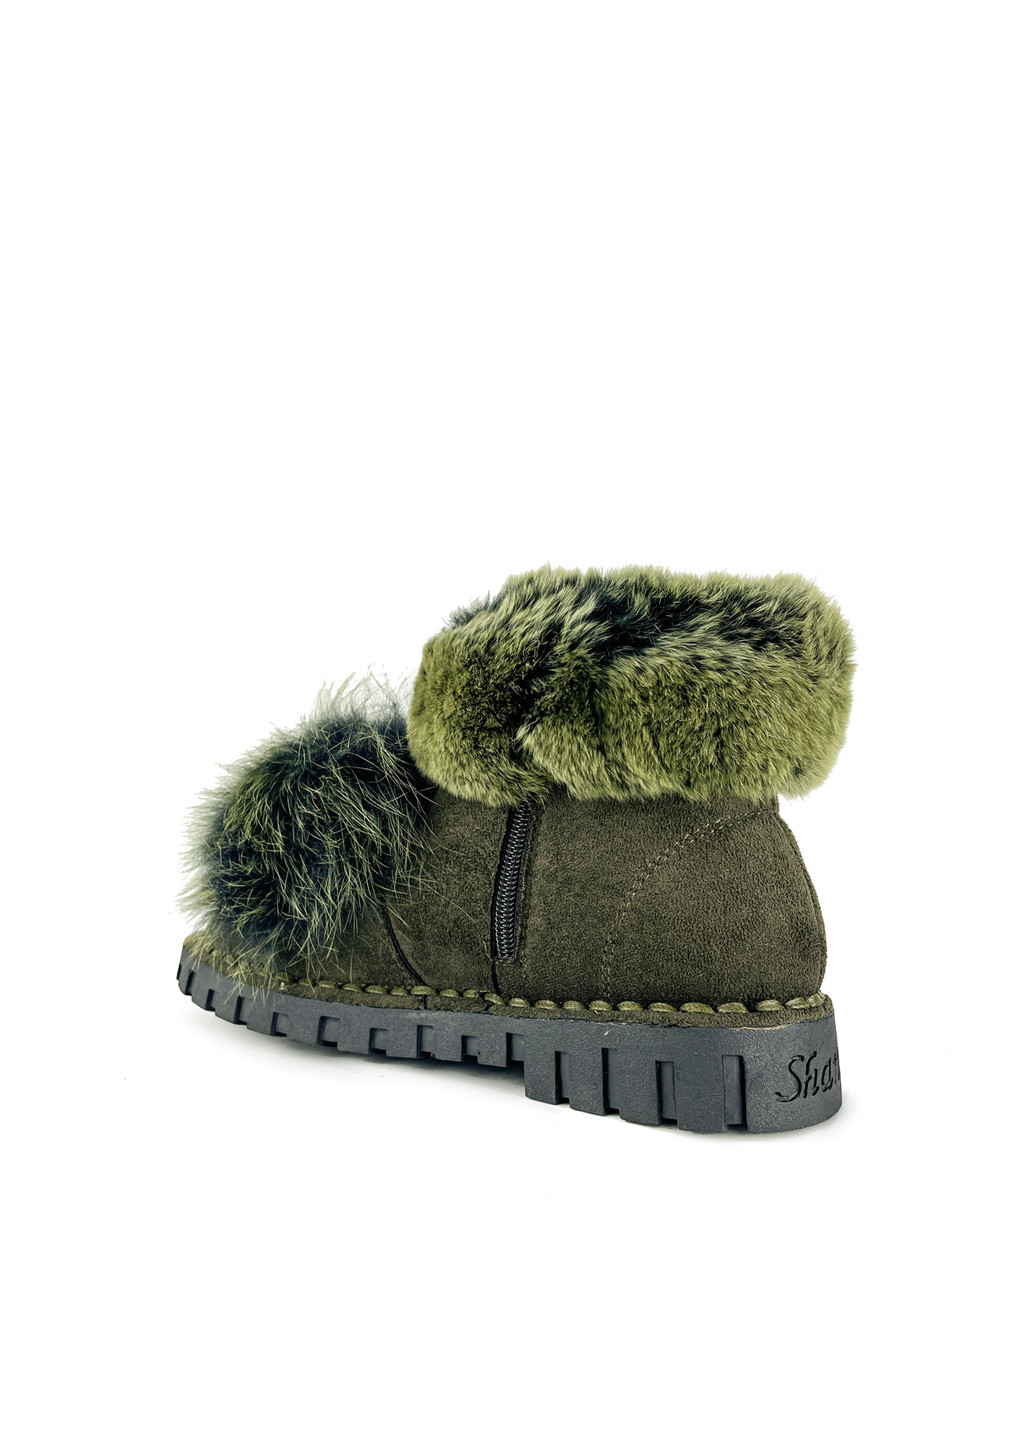 Зимние ботинки женские зеленые из эко замши зимние с мехом Fashion из искусственной замши